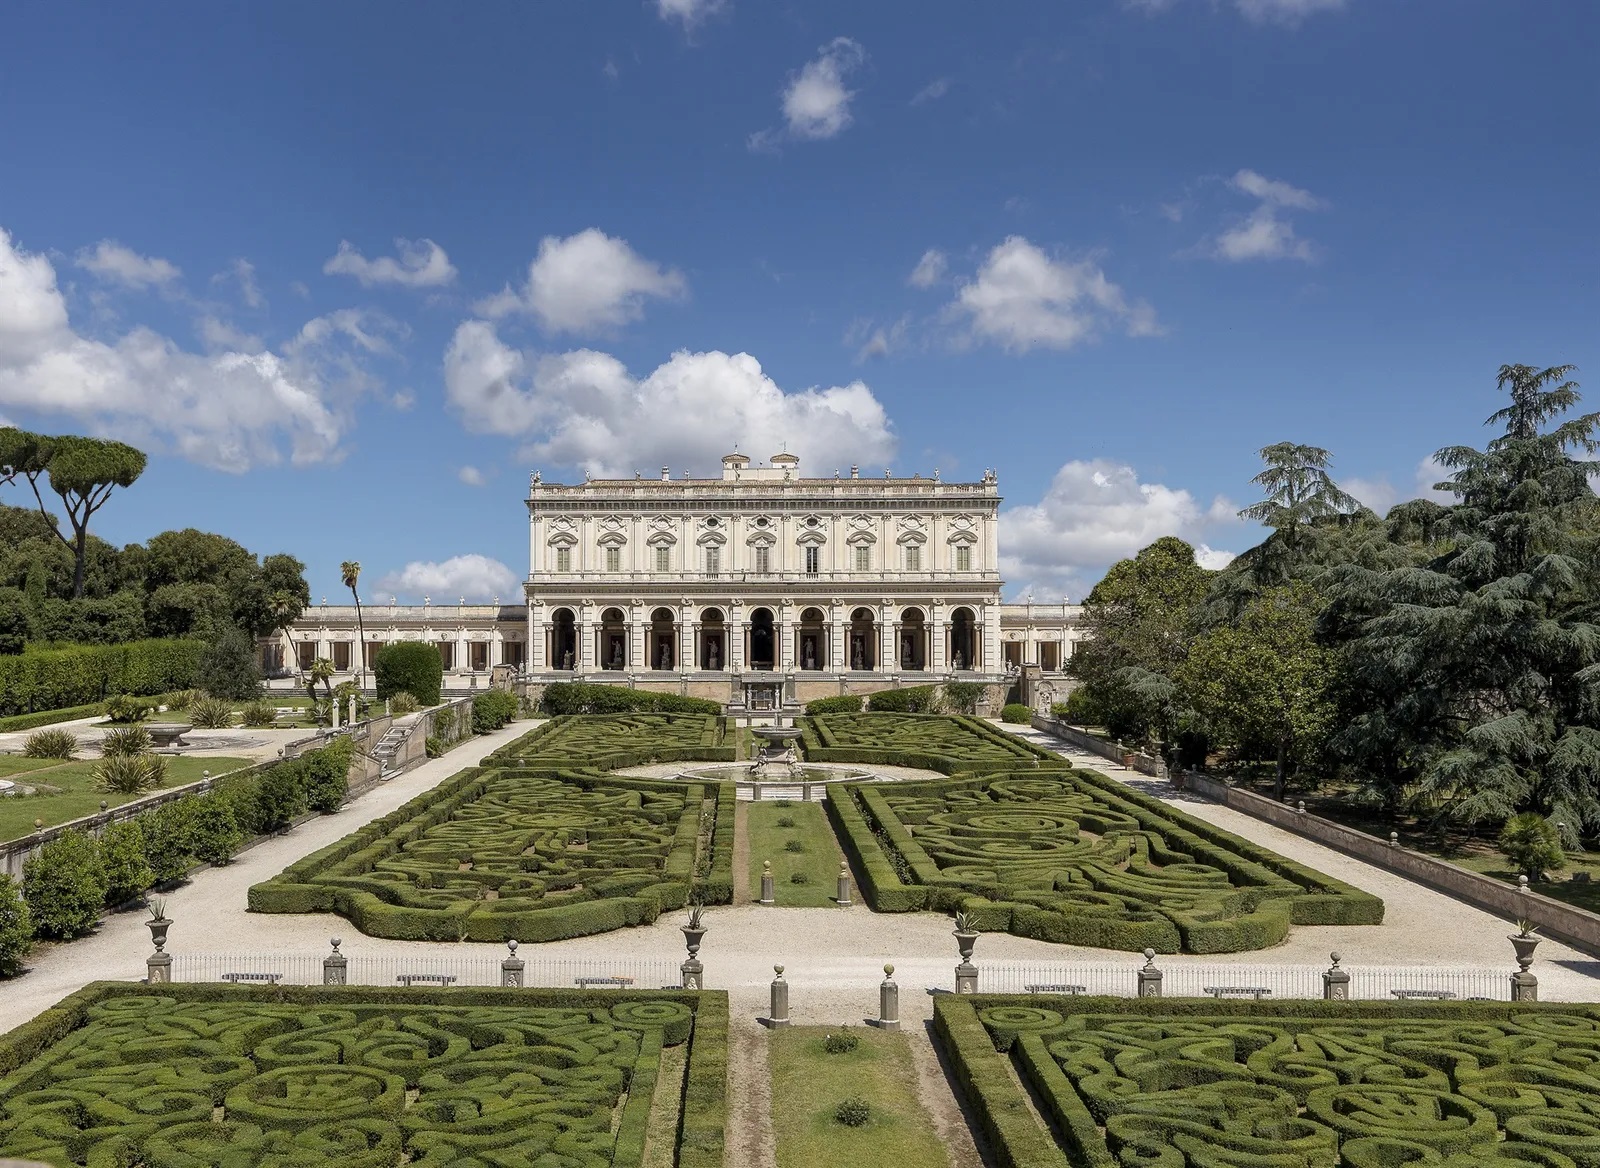 The Torlonia Foundation in Rome opens the antiquarium of Villa Albani to the public 35